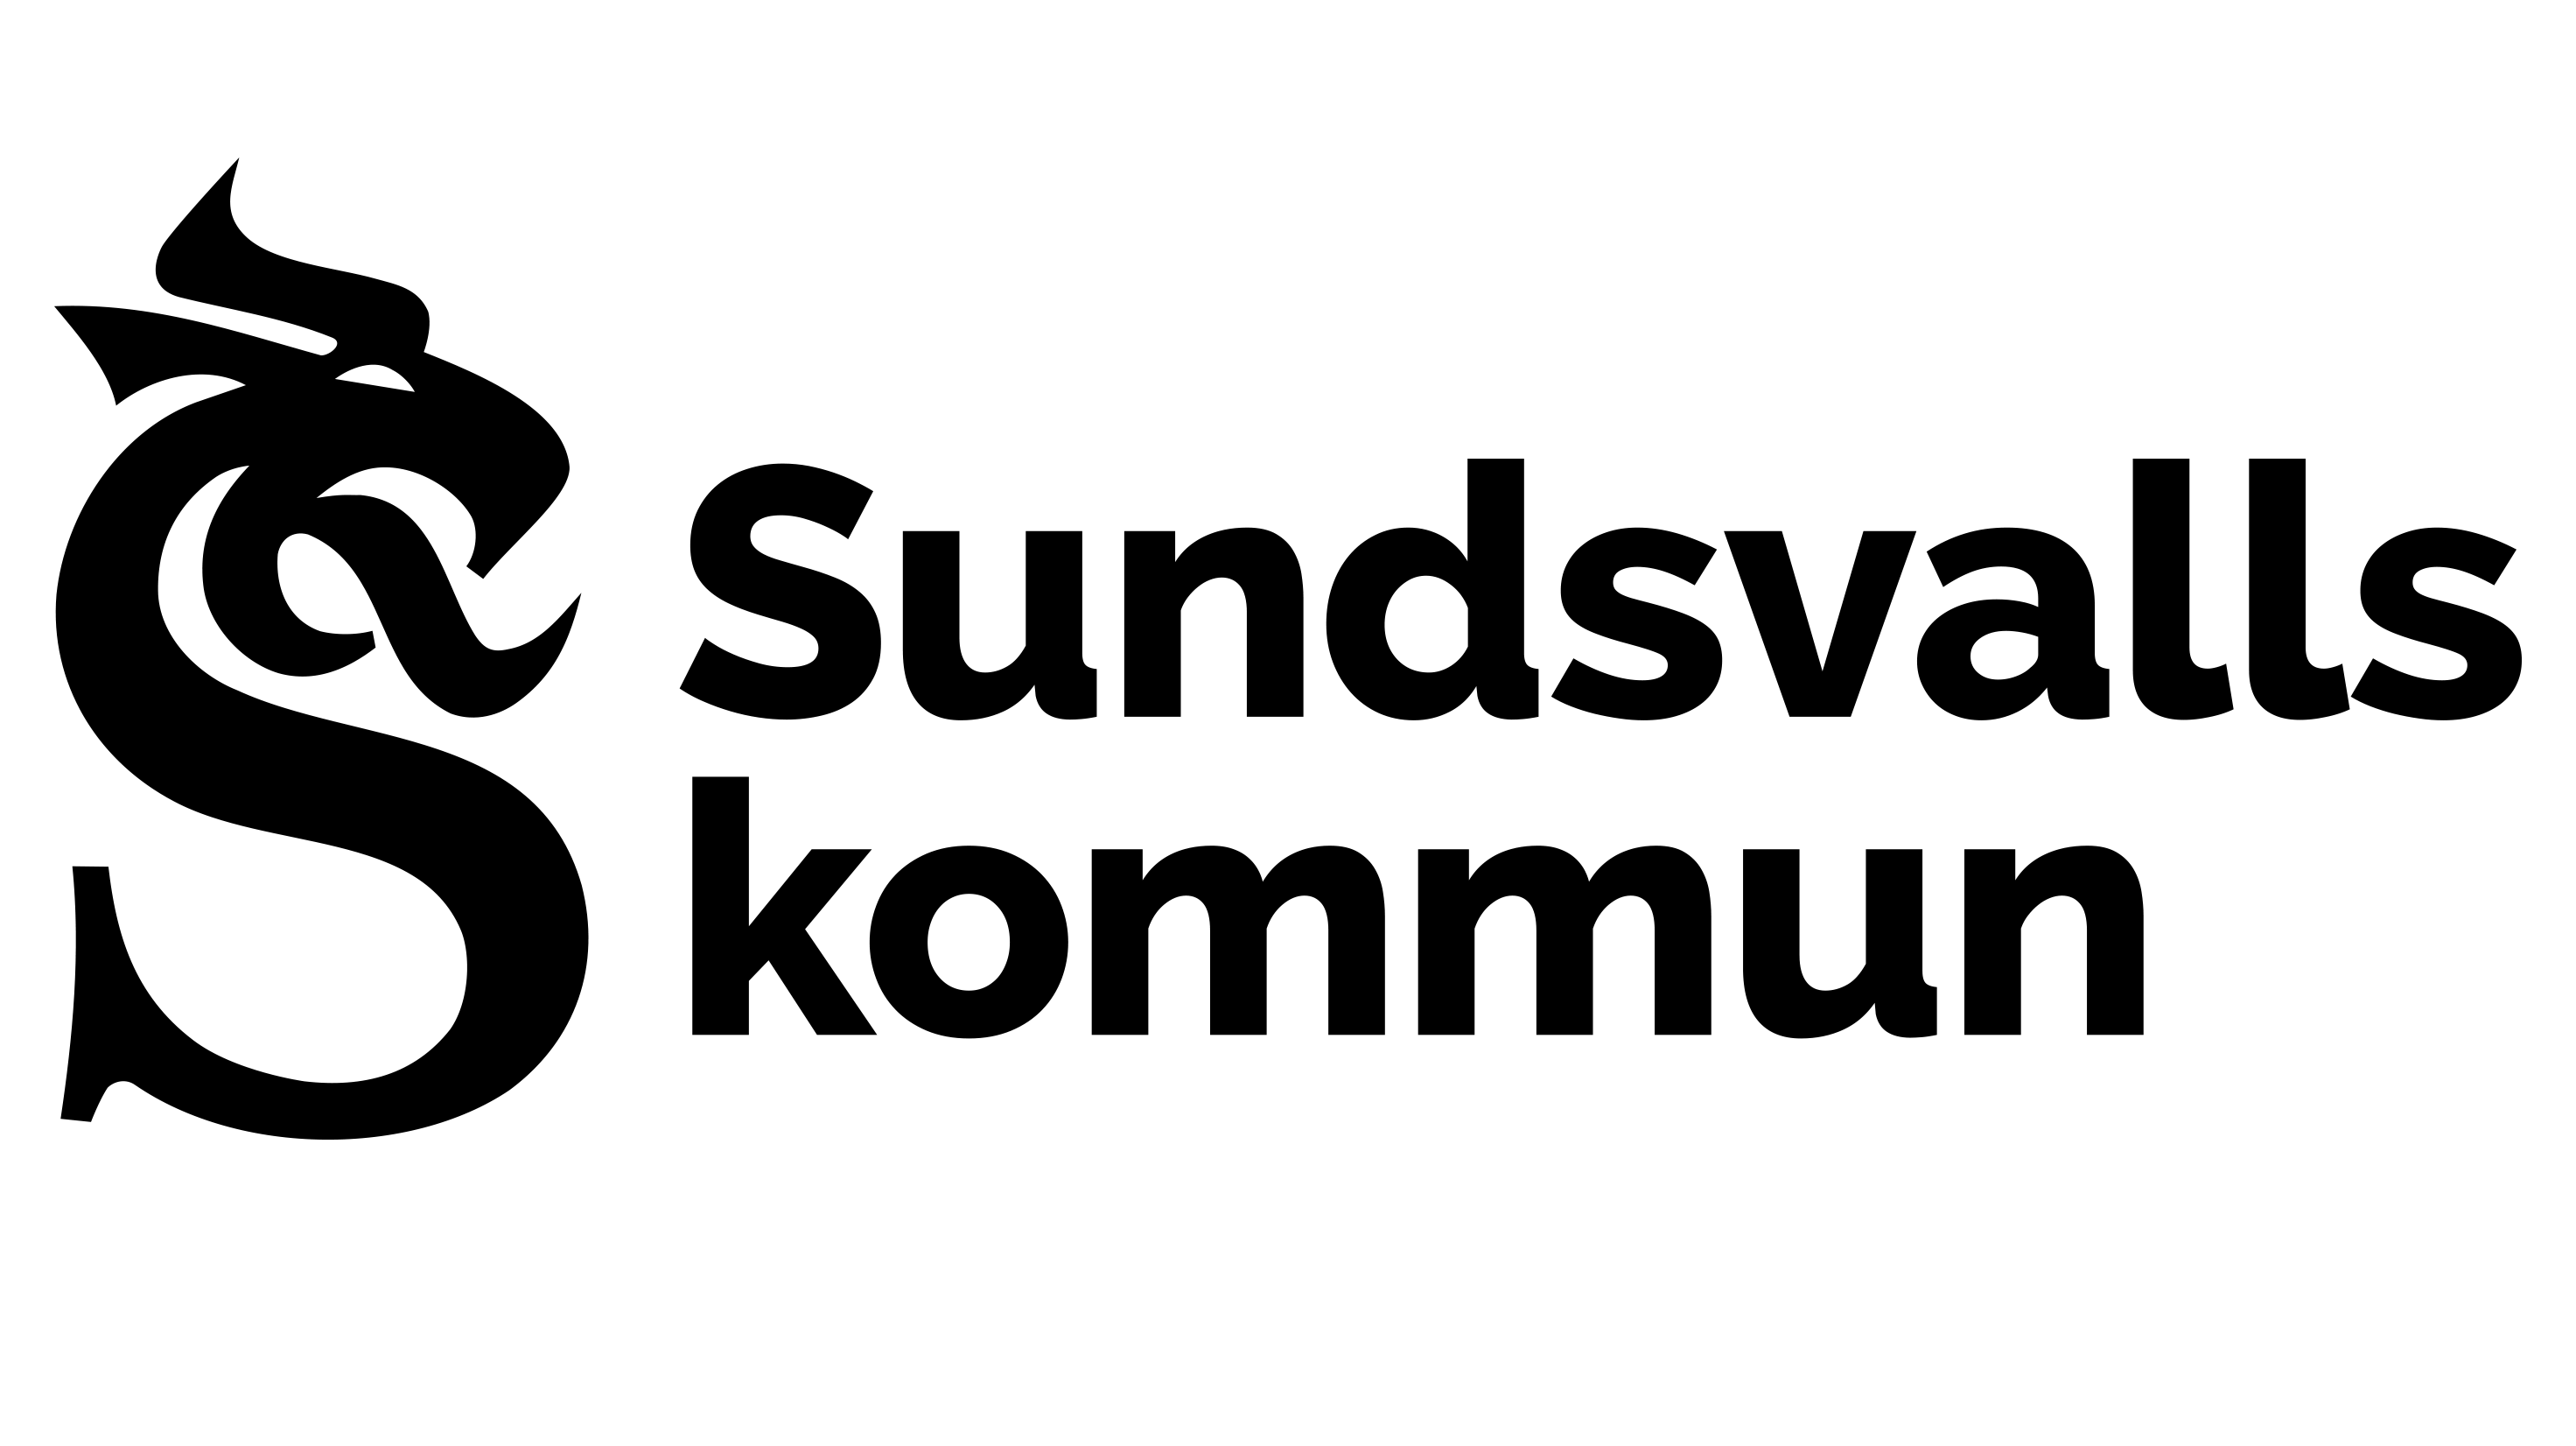 Sundsvalls kommuns logotyp